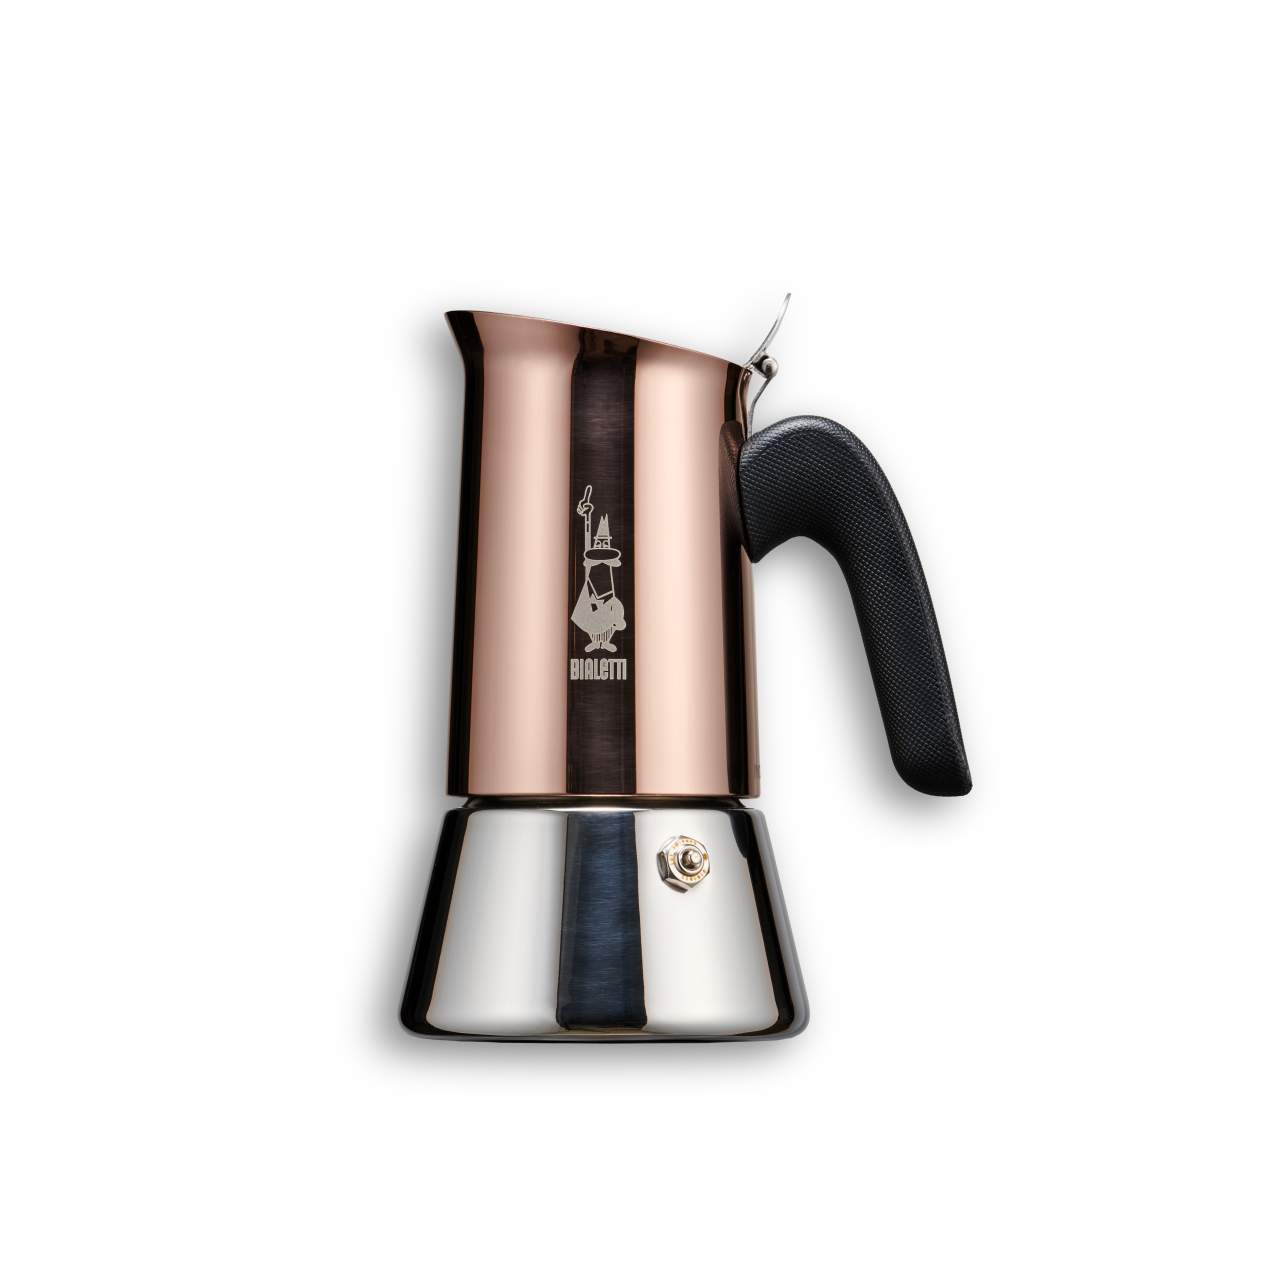 Espressokocher Bialetti New Venus 4 Tassen Kupfer